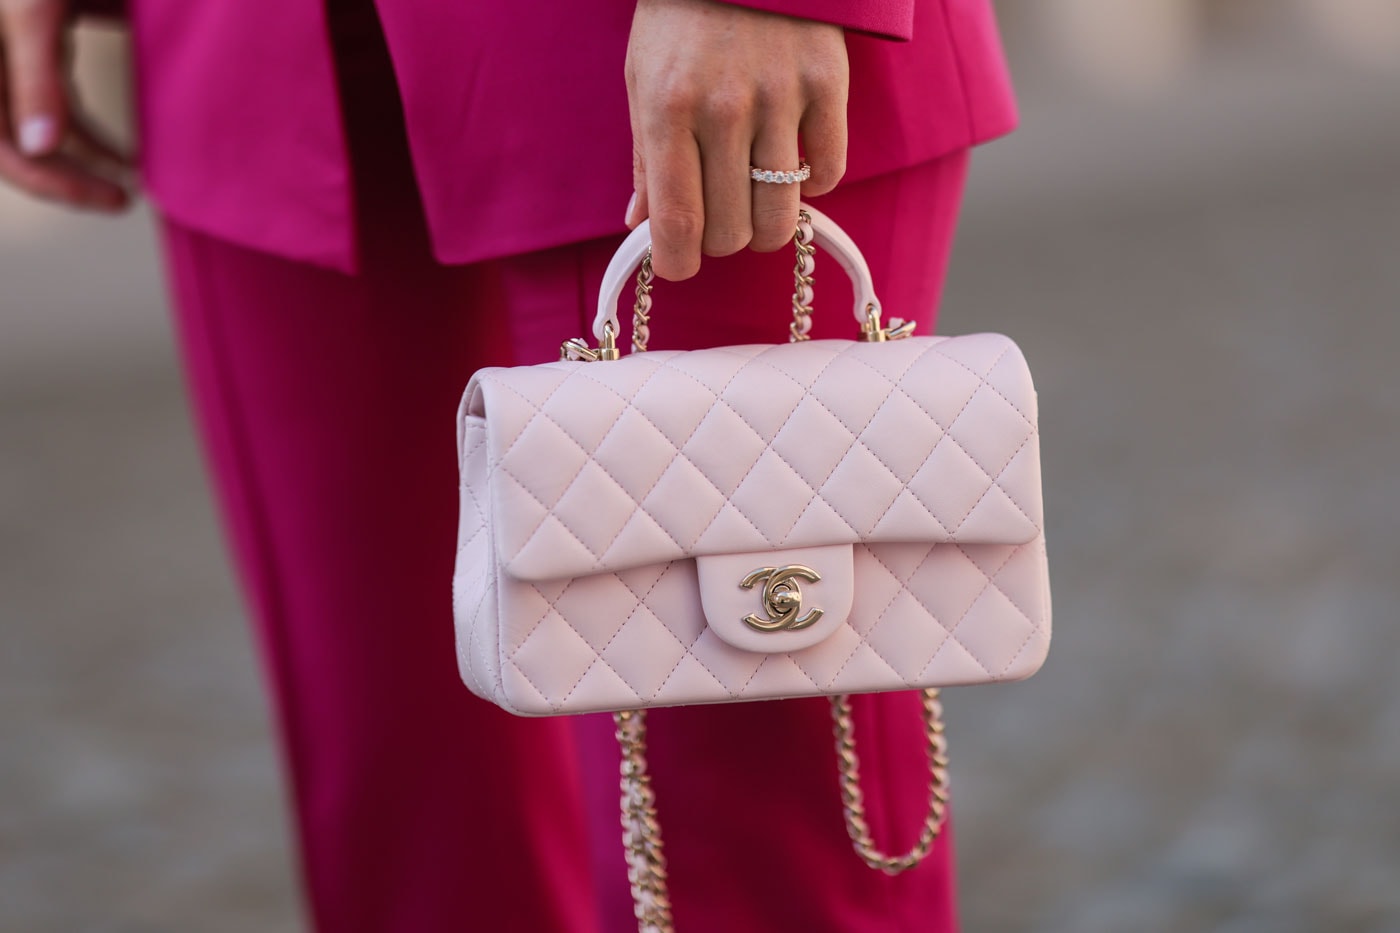 シャネルがアジア主要都市に上客専用のプライベートブティックをオープン Chanel Is Opening Private Stores for Its Top Clients french luxury fashion conglomerate paris karl lagerfeld lvmh hermes louis vuitton kering